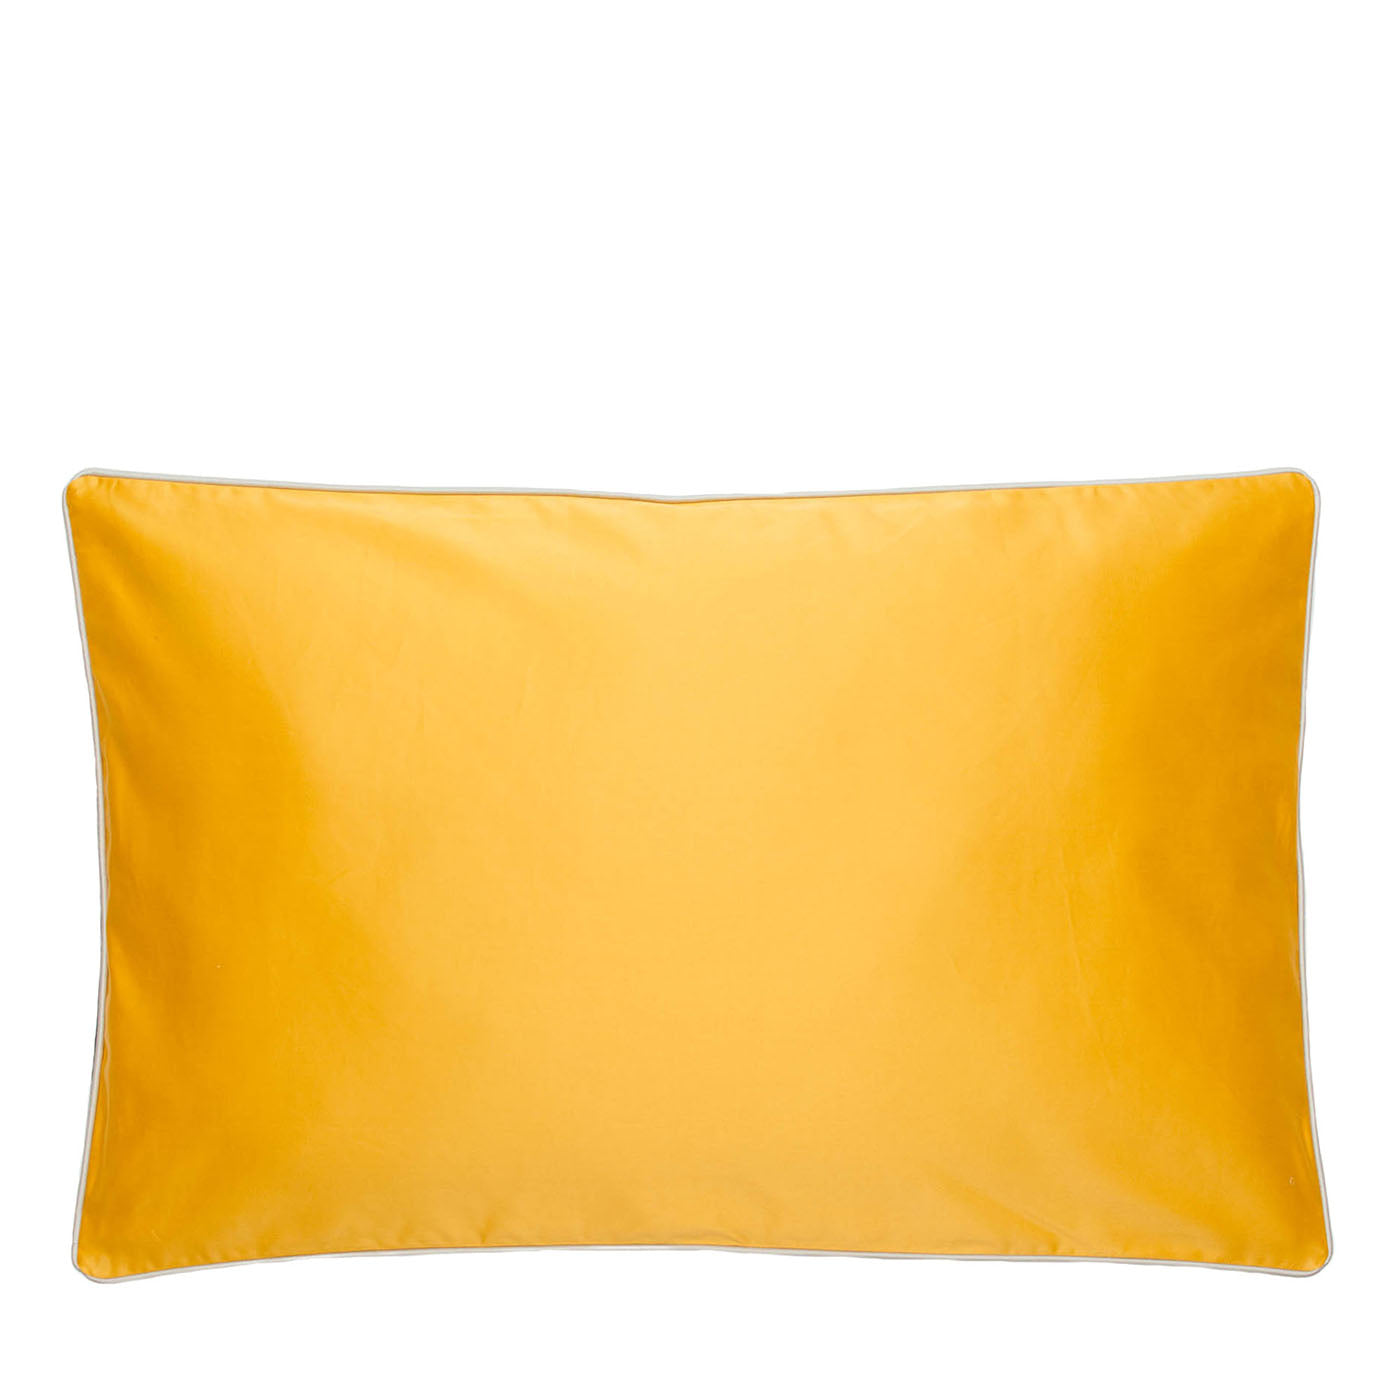 Cruise Yellow Pillowcase - Main view